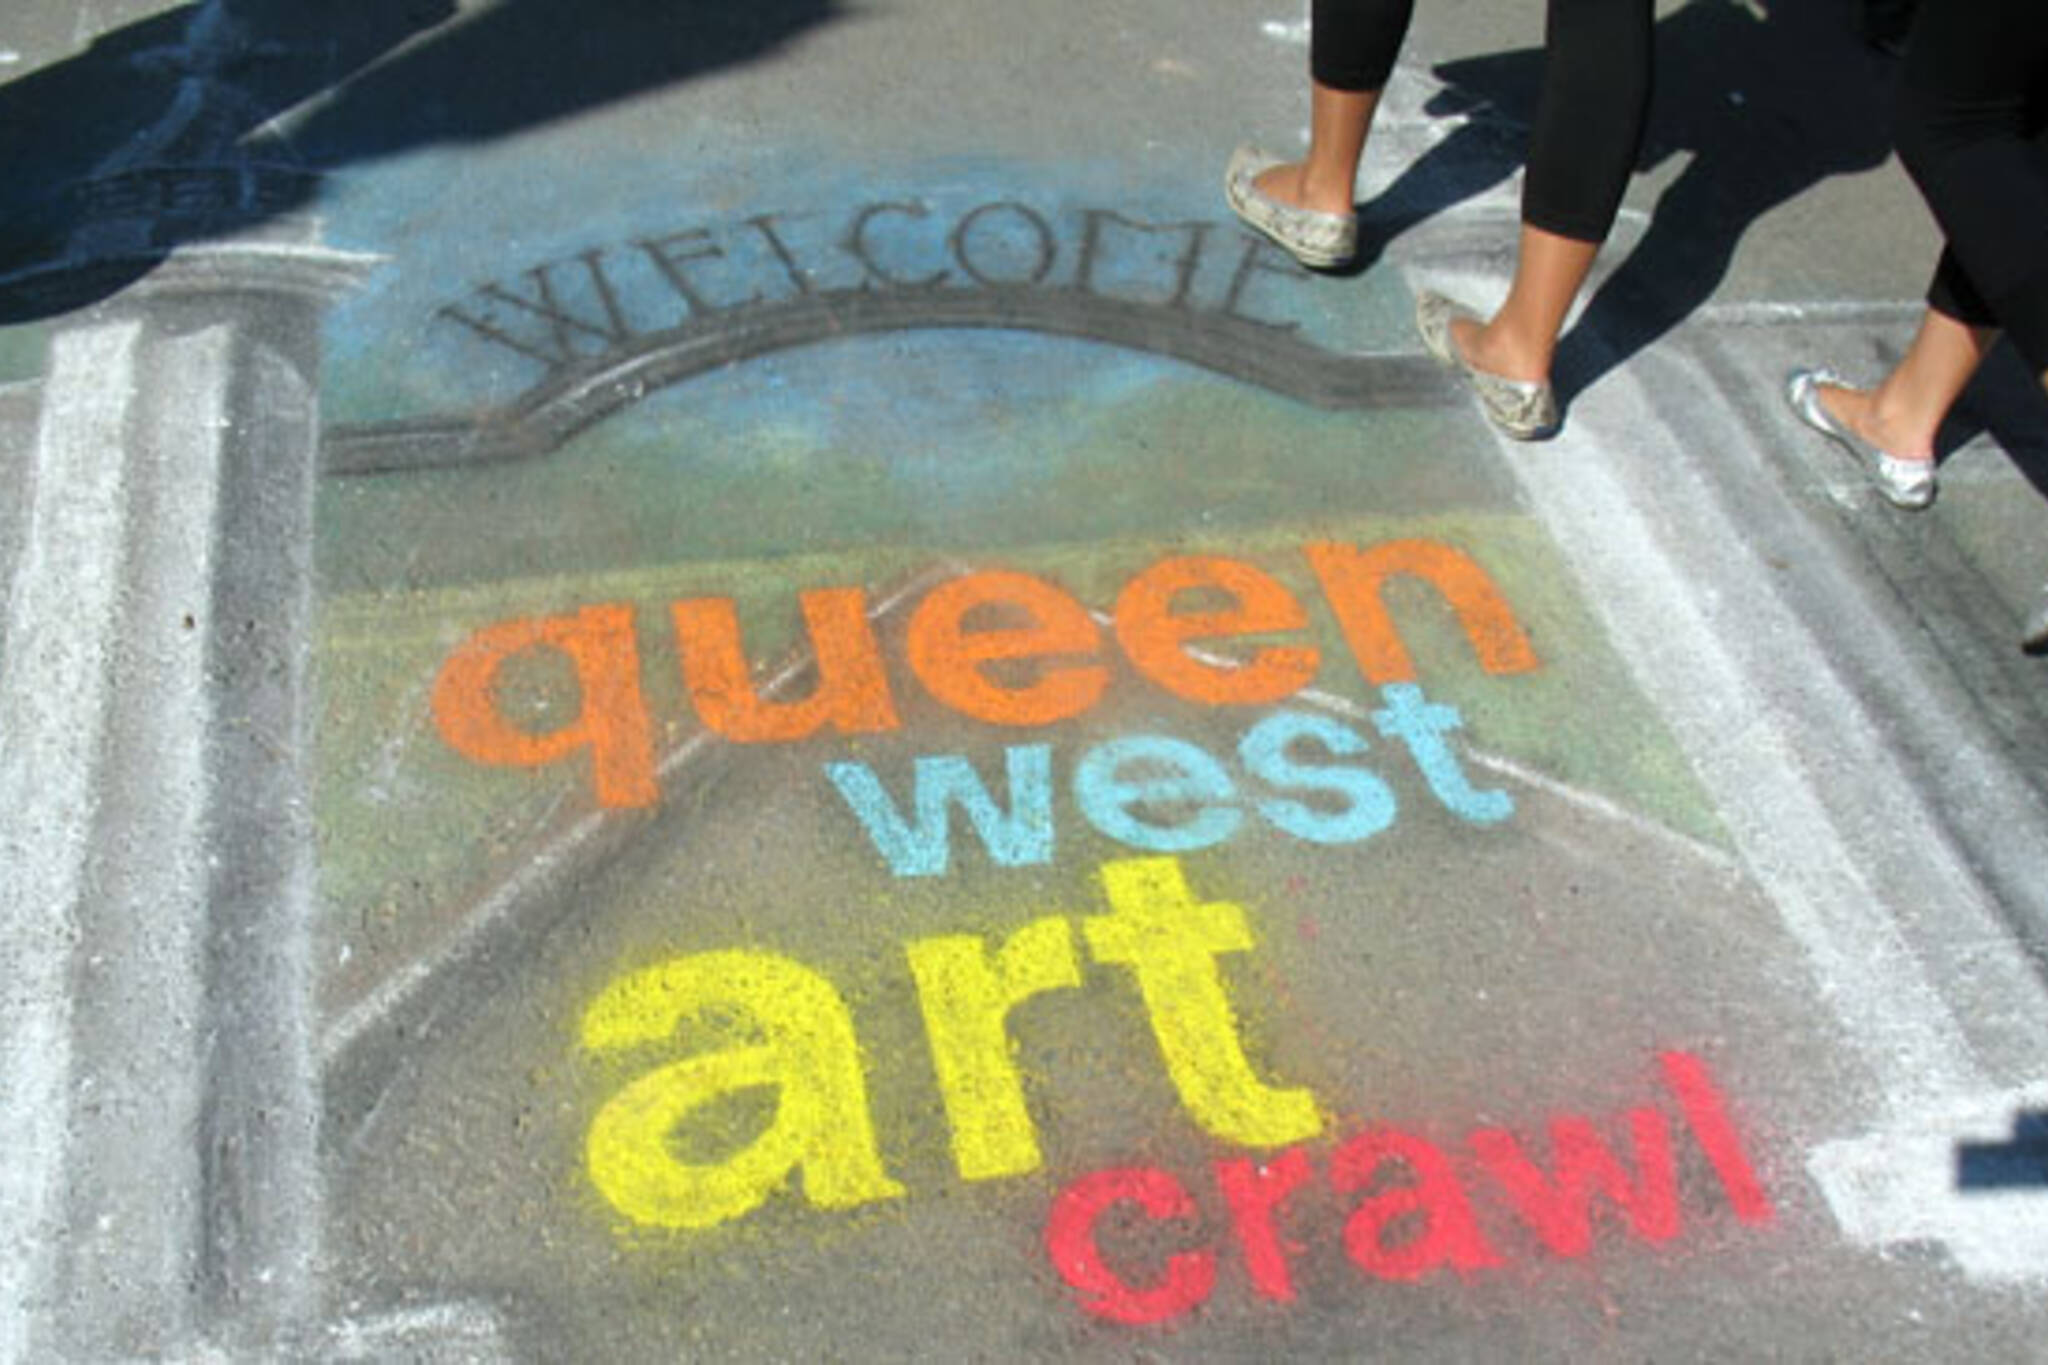 Queen West Art Crawl